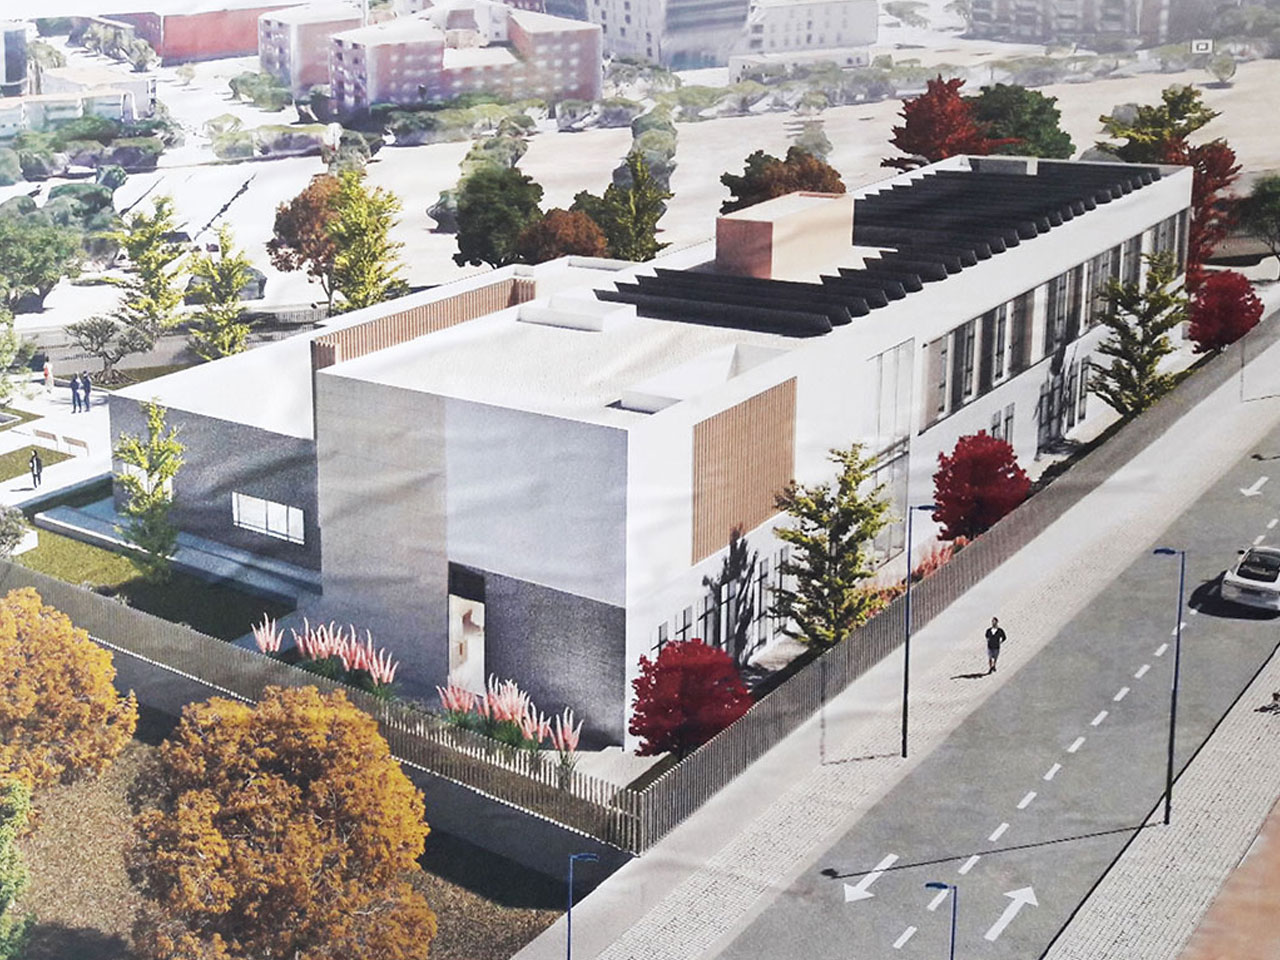 La nueva comisaría de Puertollano, en Ciudad Real, ejemplo de arquitectura vanguardista y sostenible